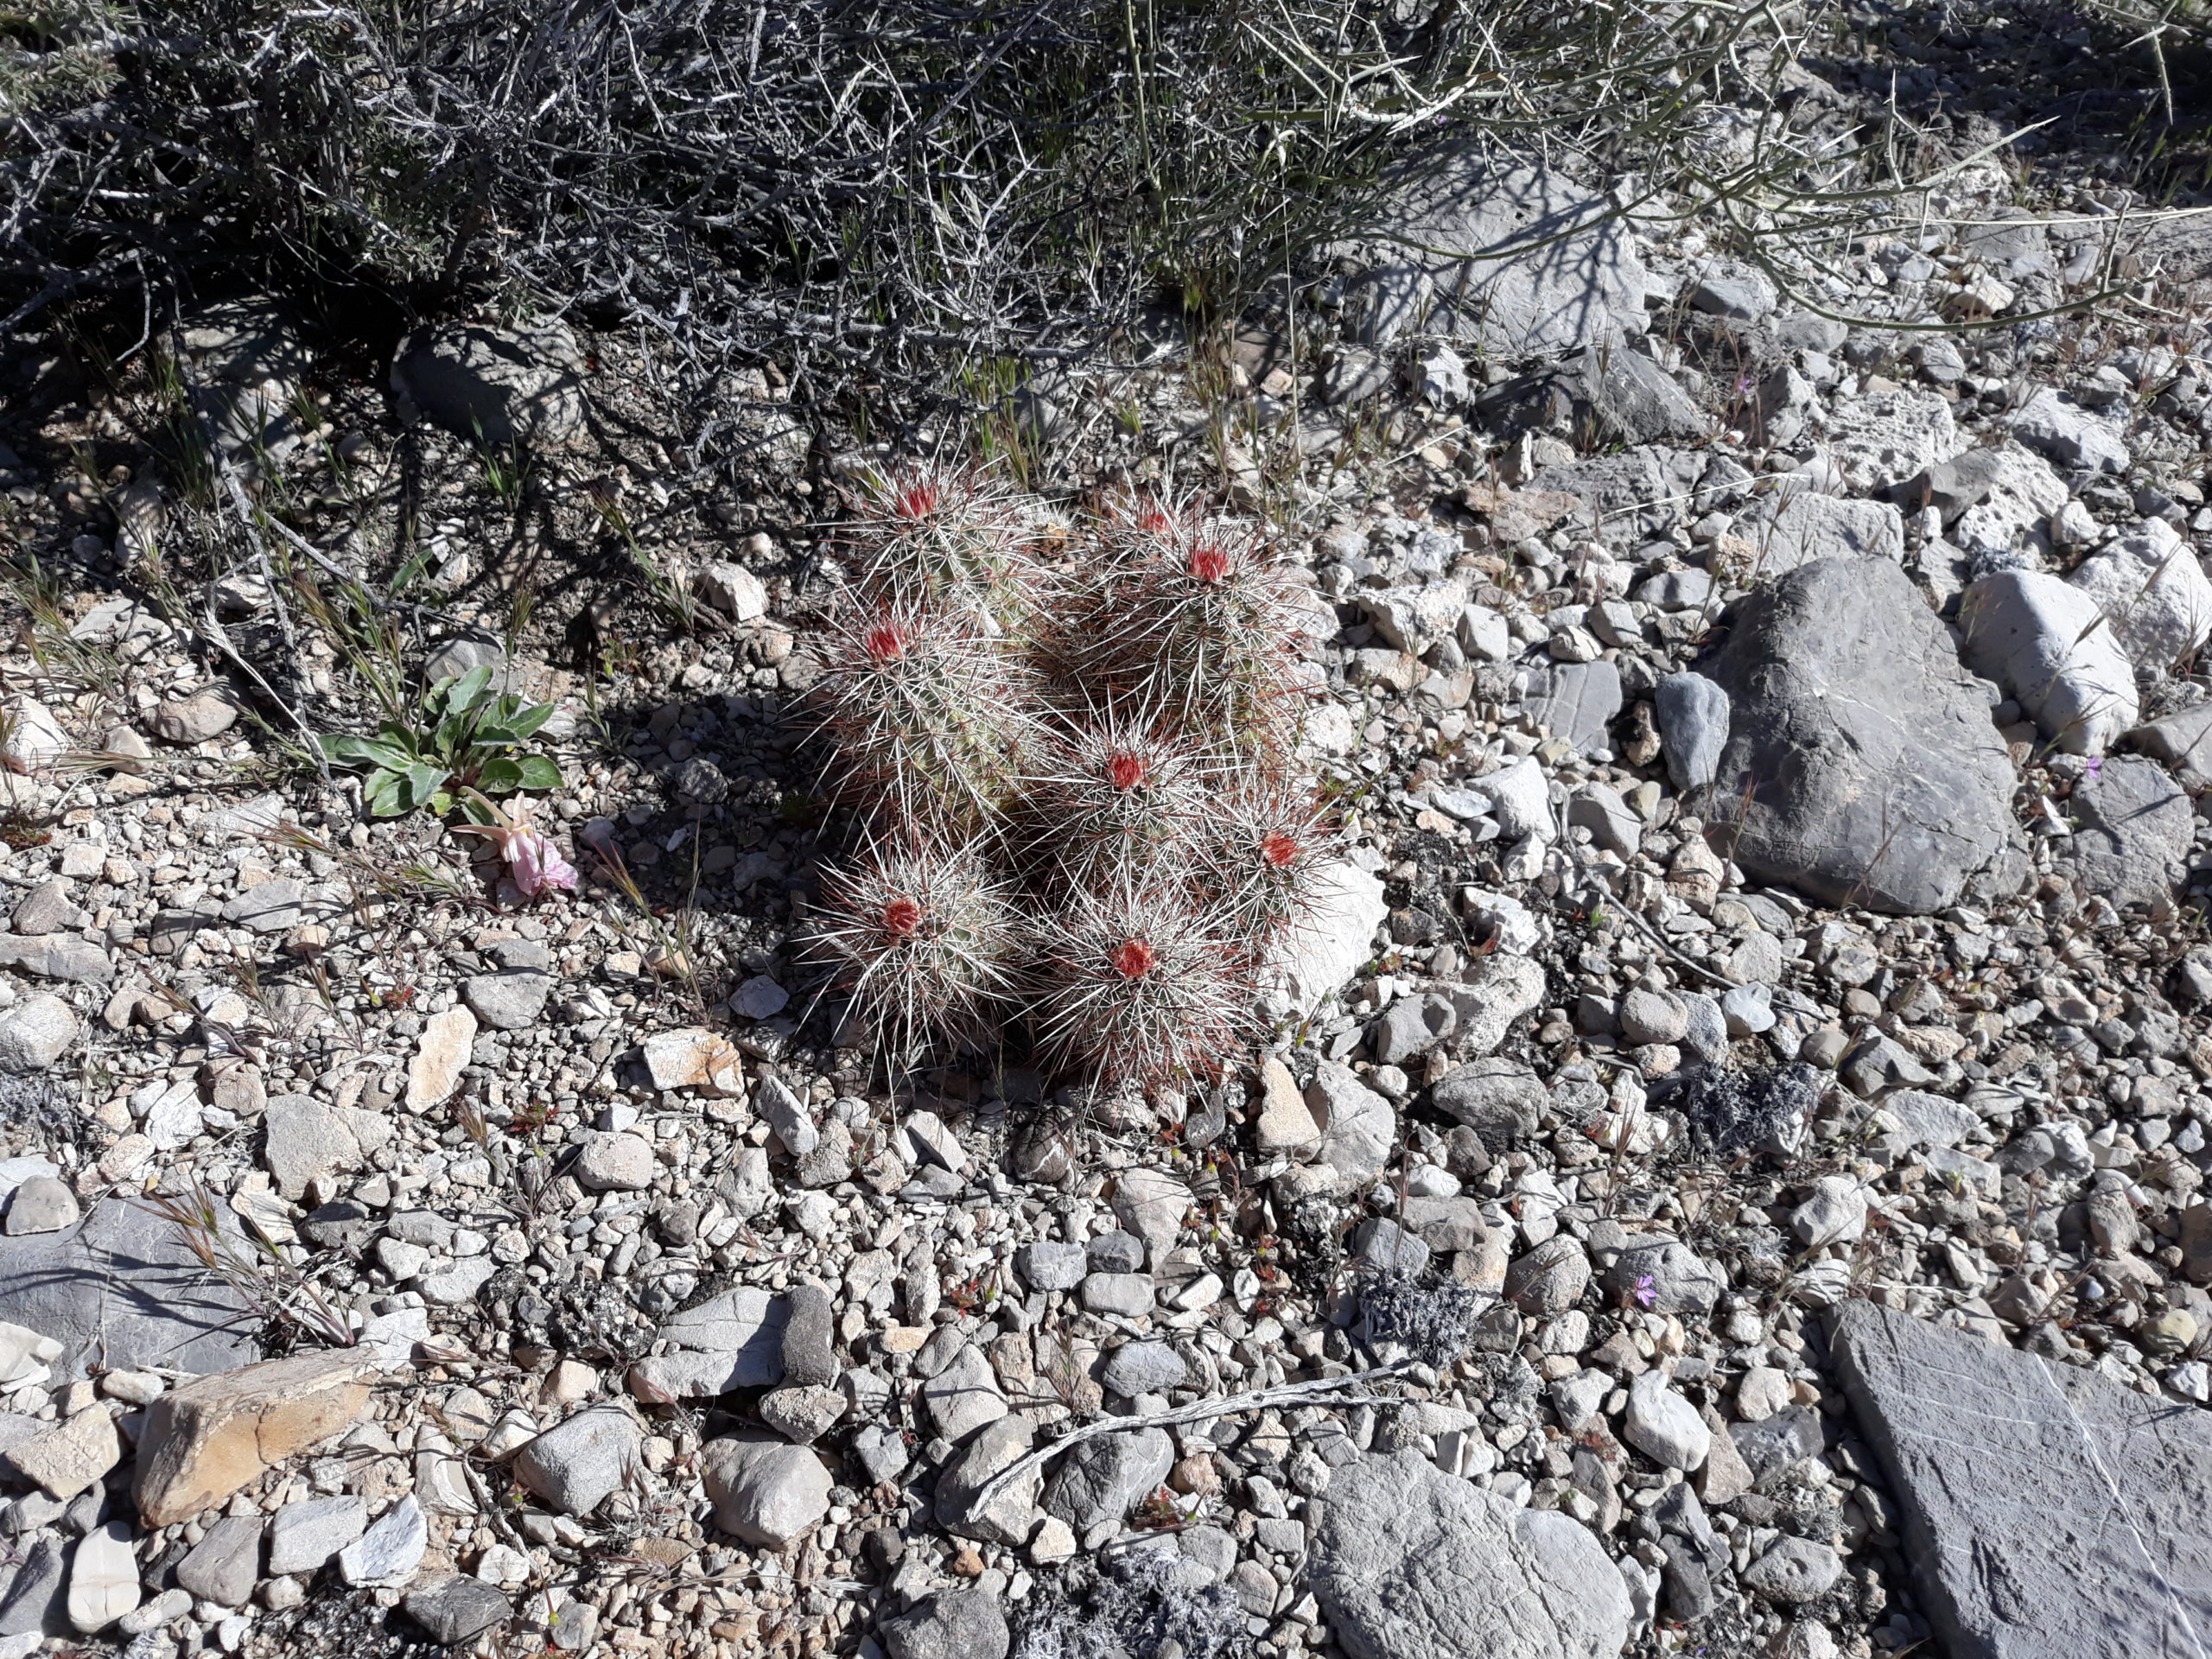 Hedghog Cactus